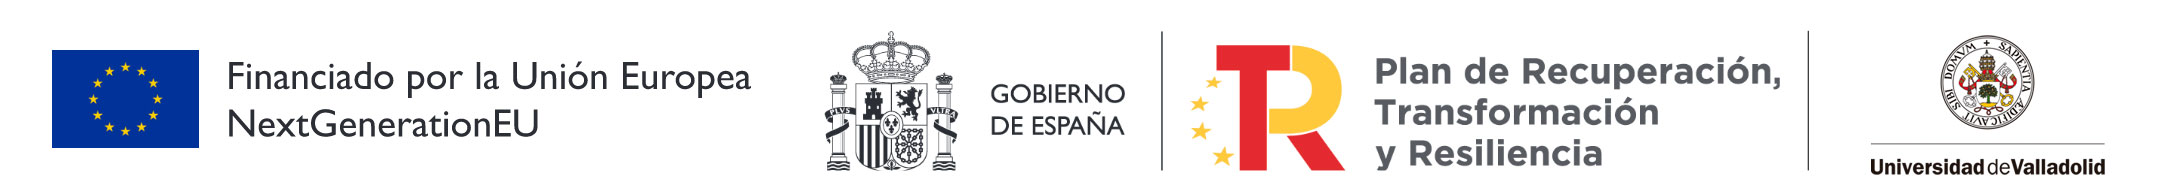 Logotipos Financiado por la Unión Europea, Gobierno de España, Plan De Recuperación, Transformación y Resilencia y Universidad de Valladolid